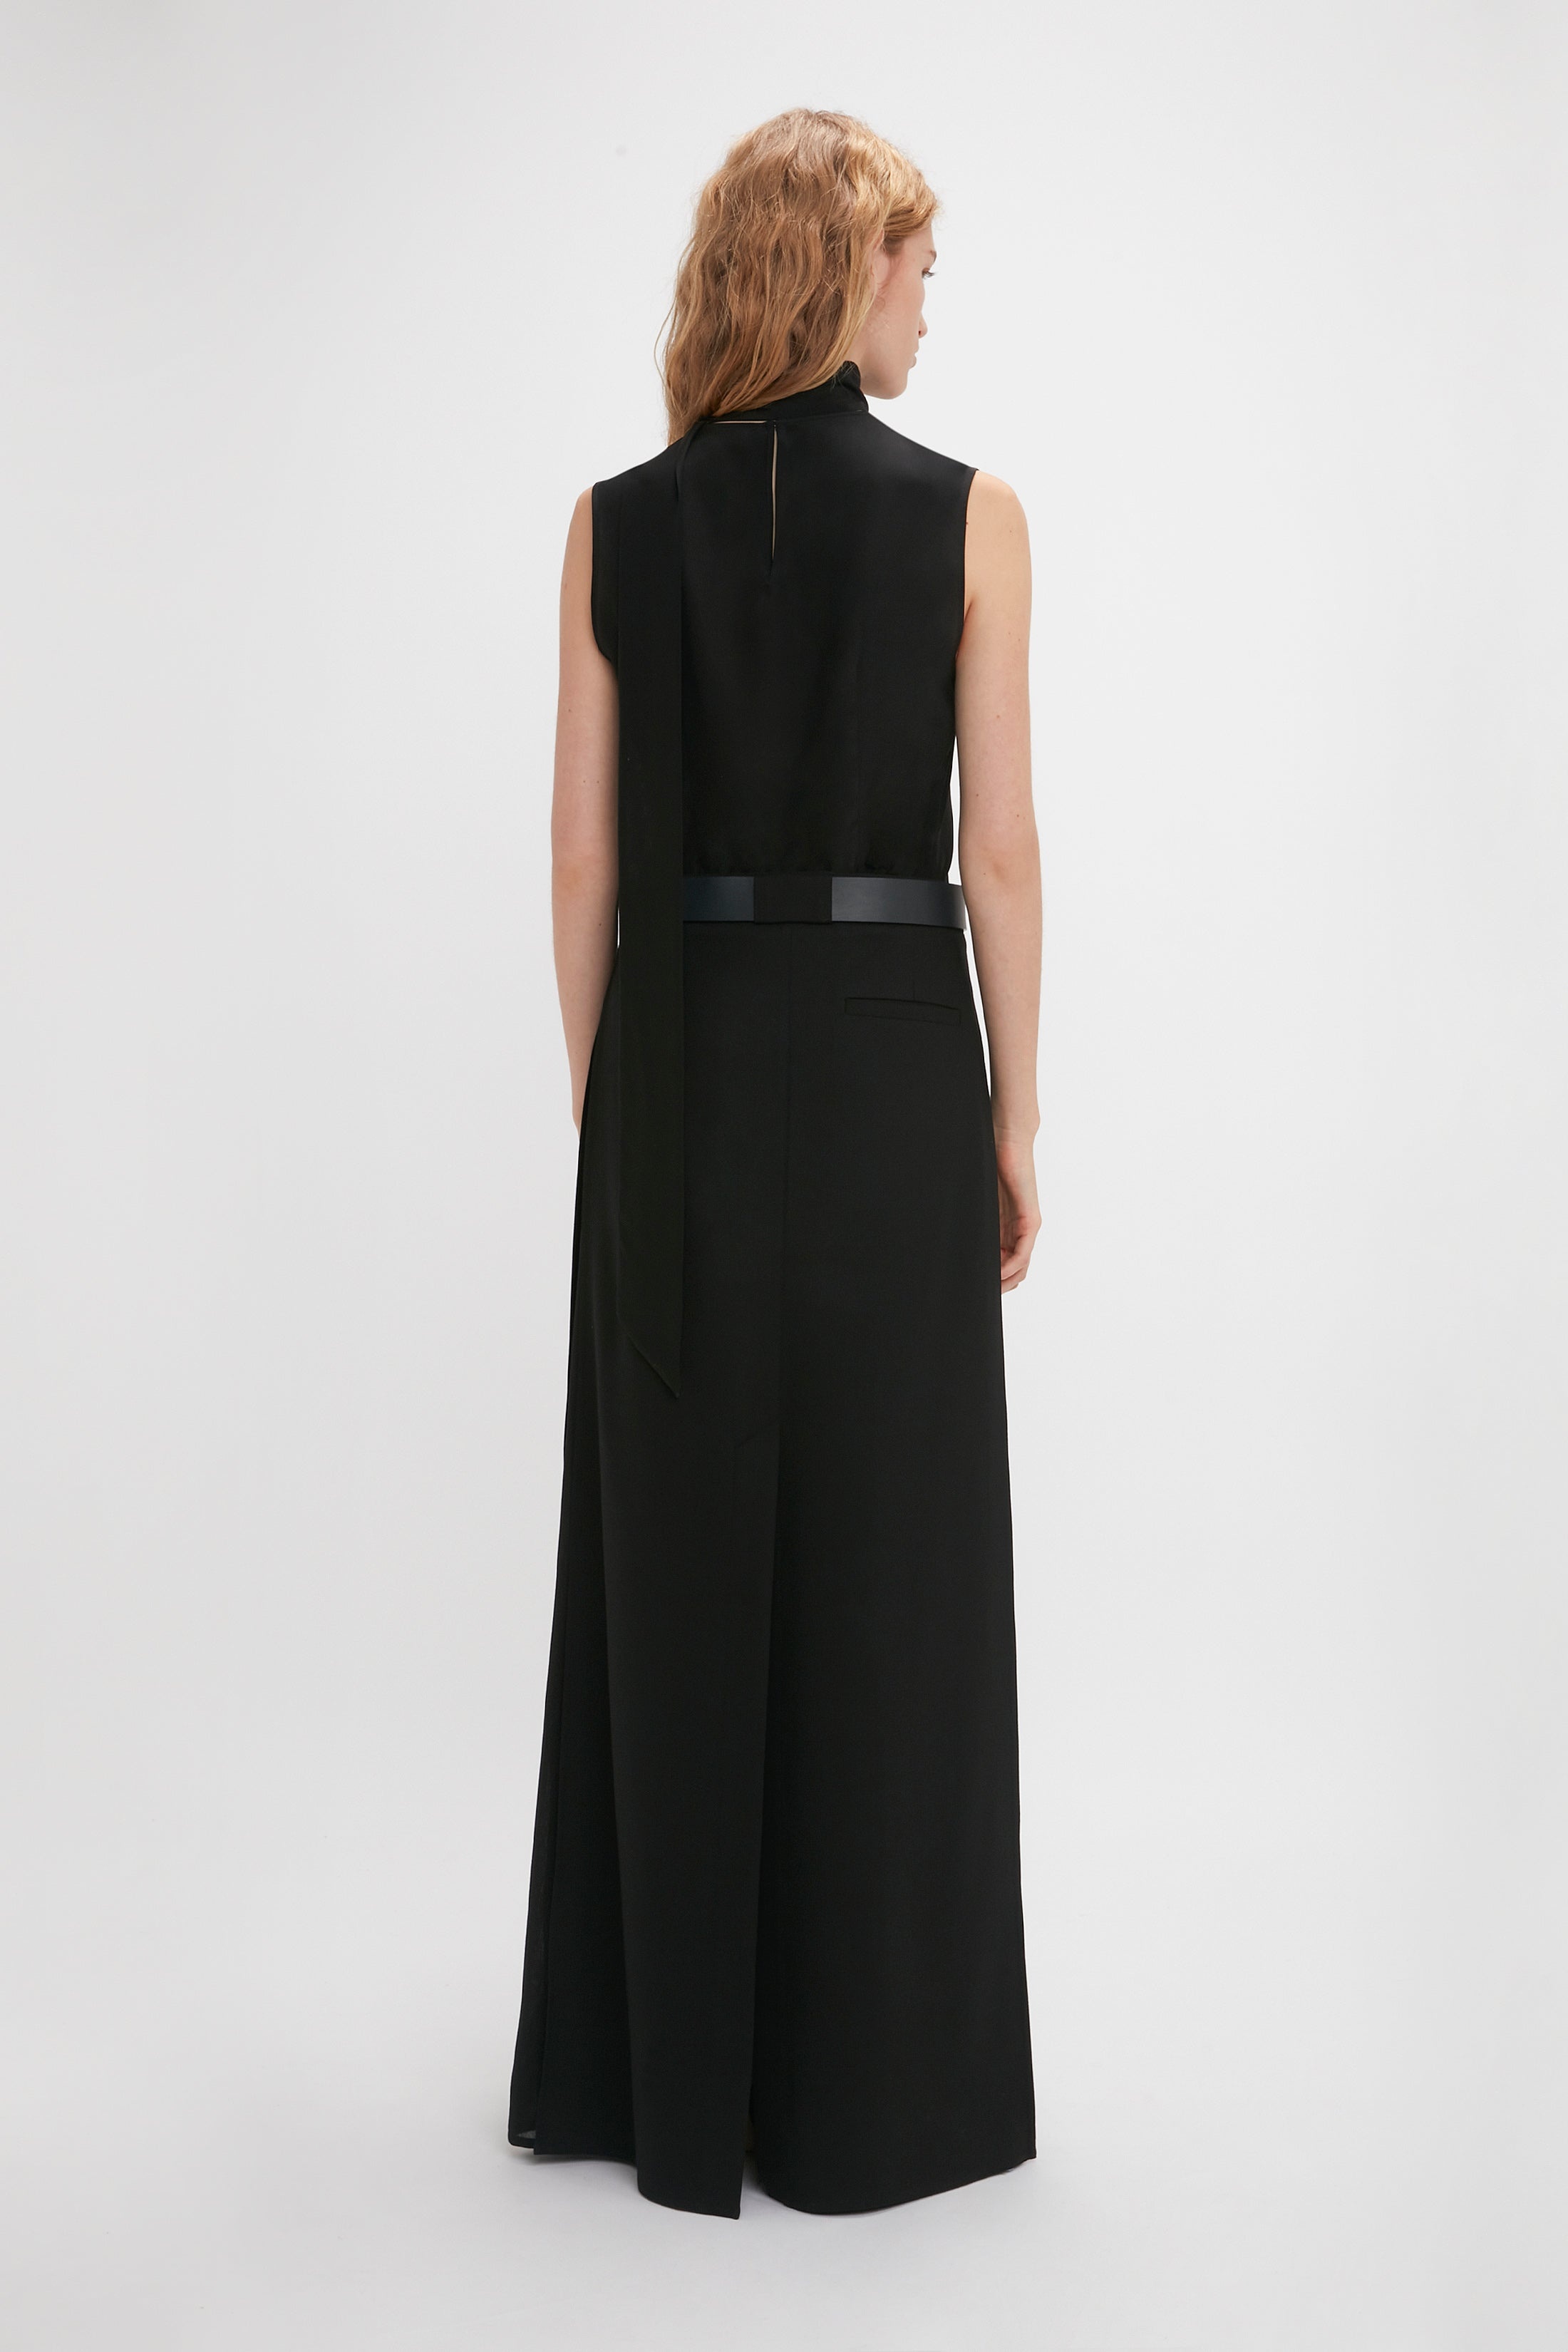 Tailored Floor-Length Skirt In Black - 4